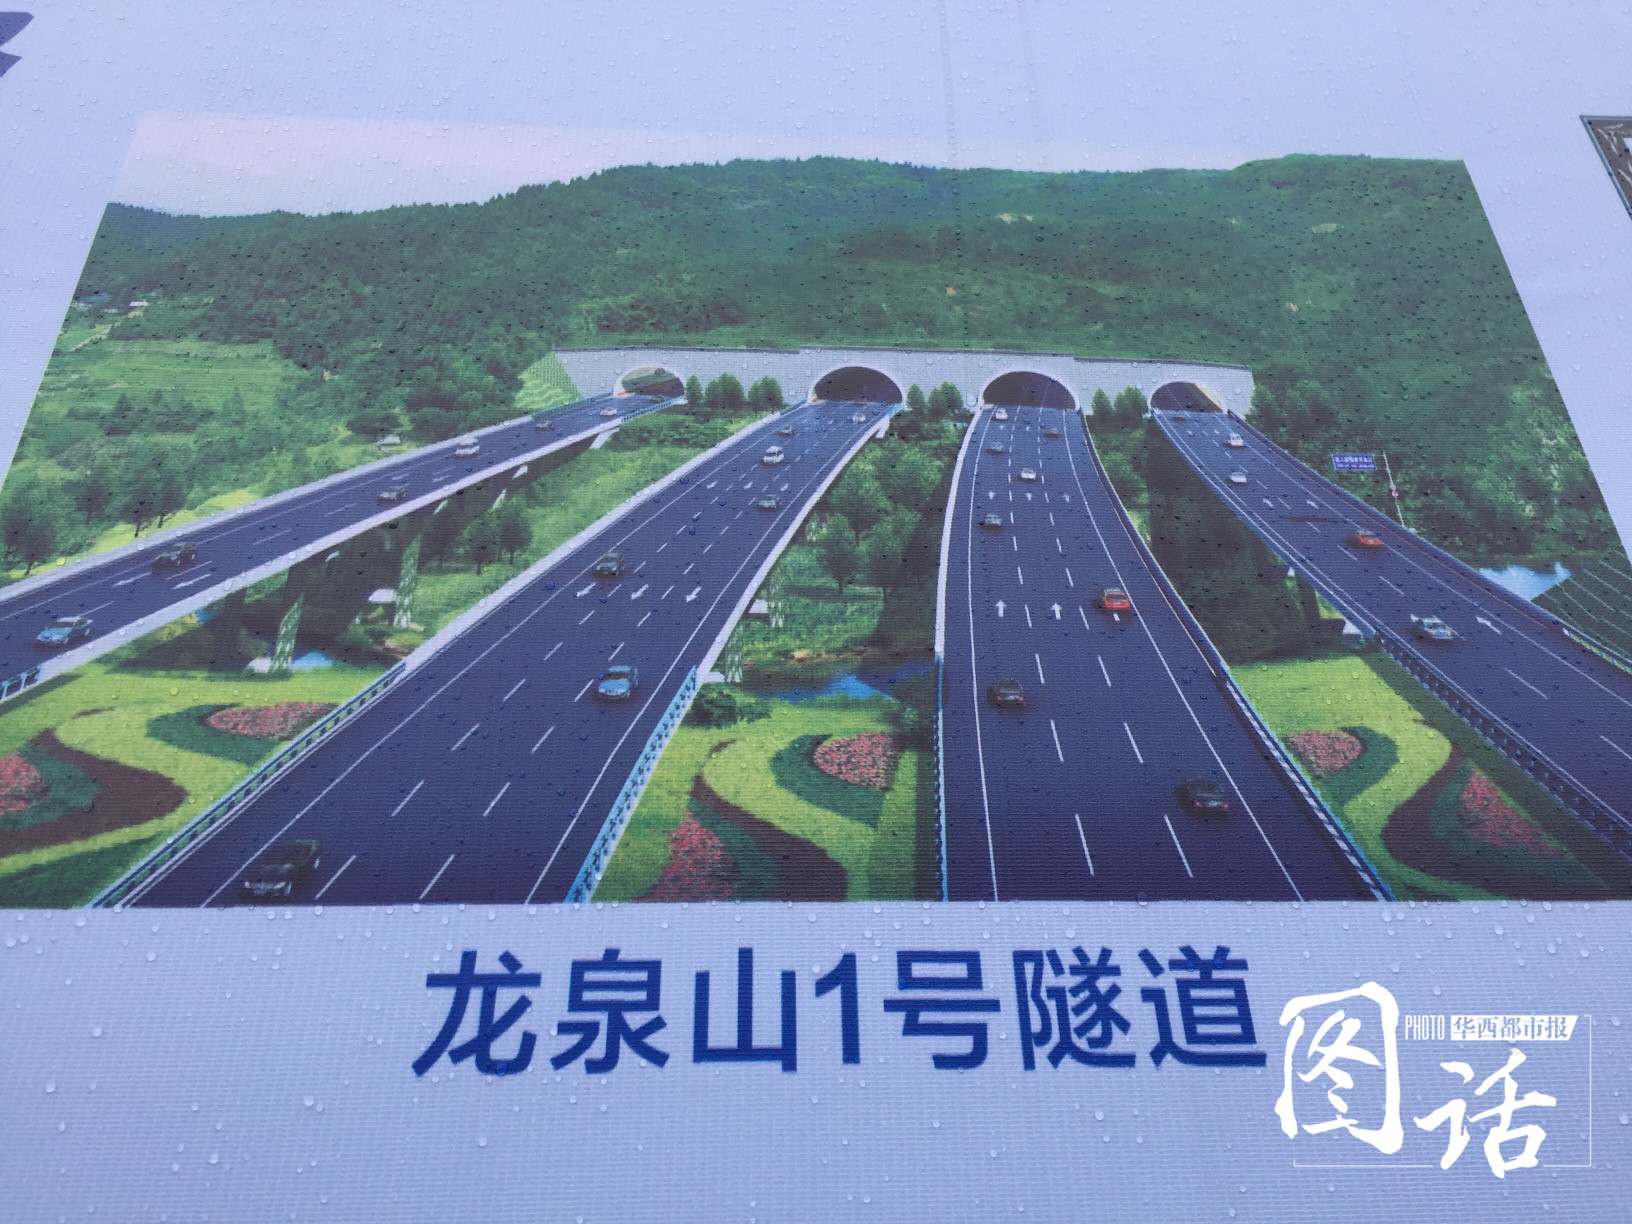 成都天府国际机场高速路开工2019年通车 市中心半小时跑拢